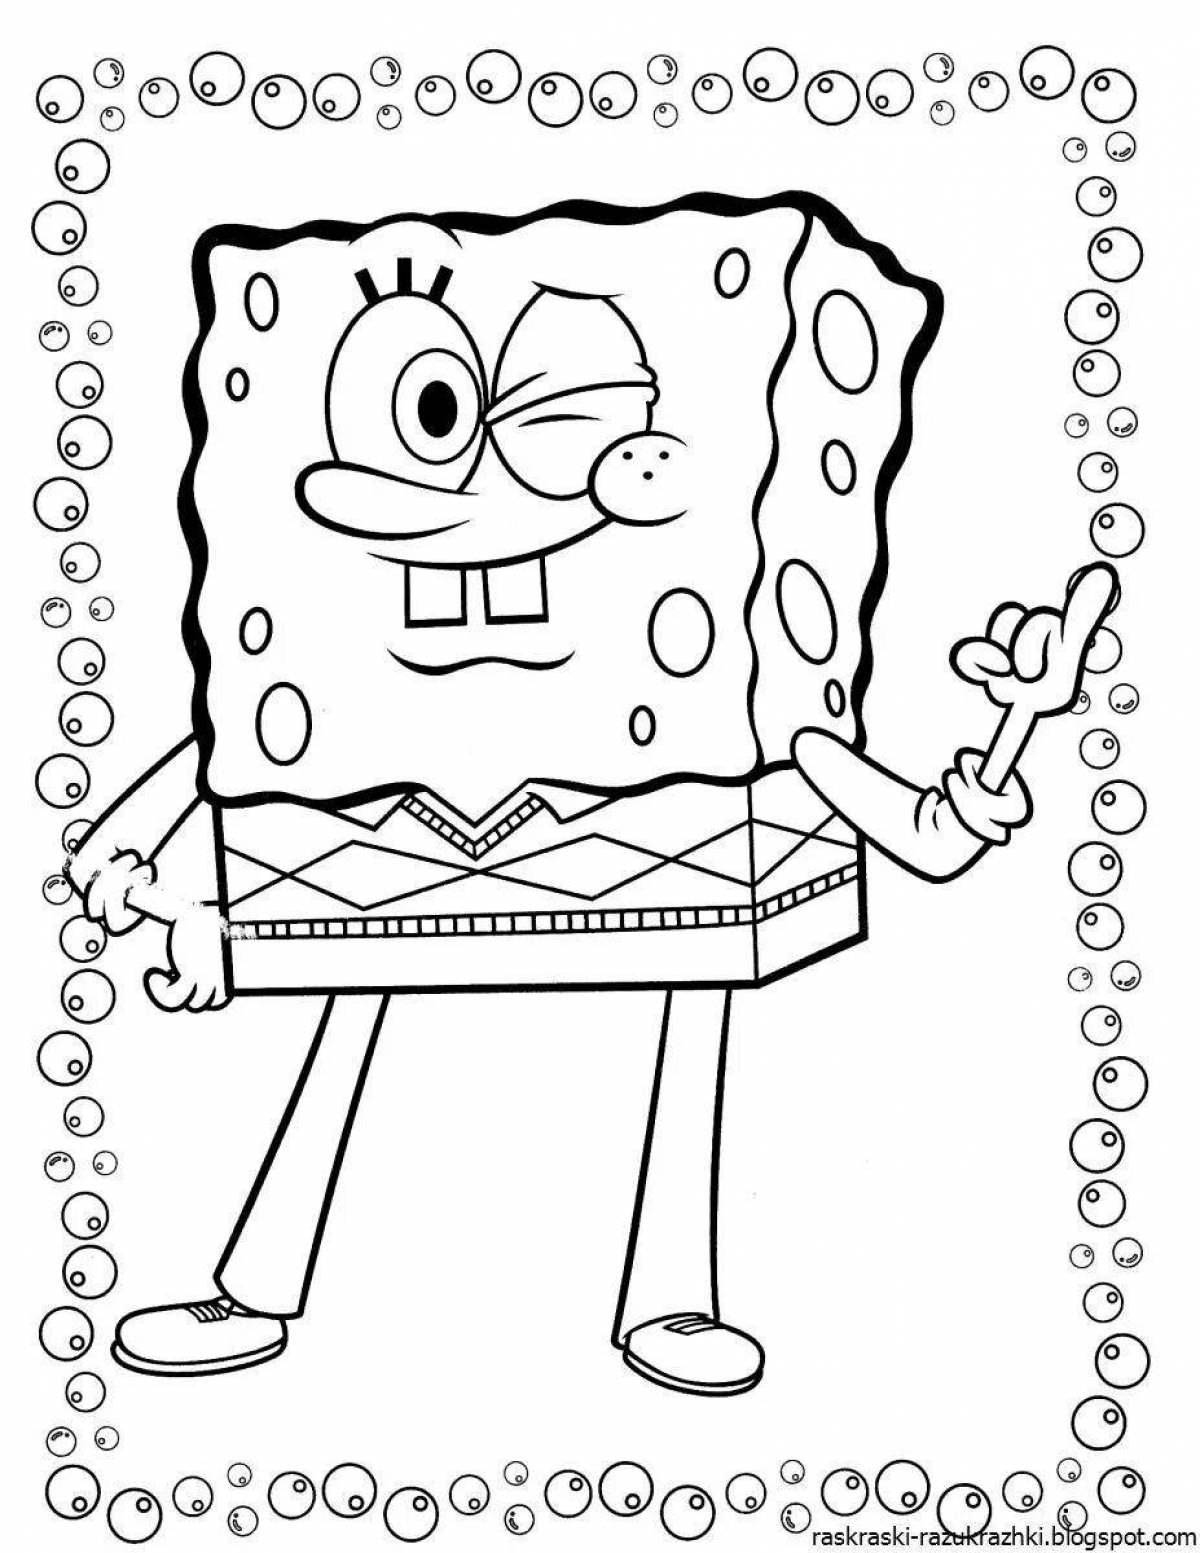 Fun coloring spongebob for kids